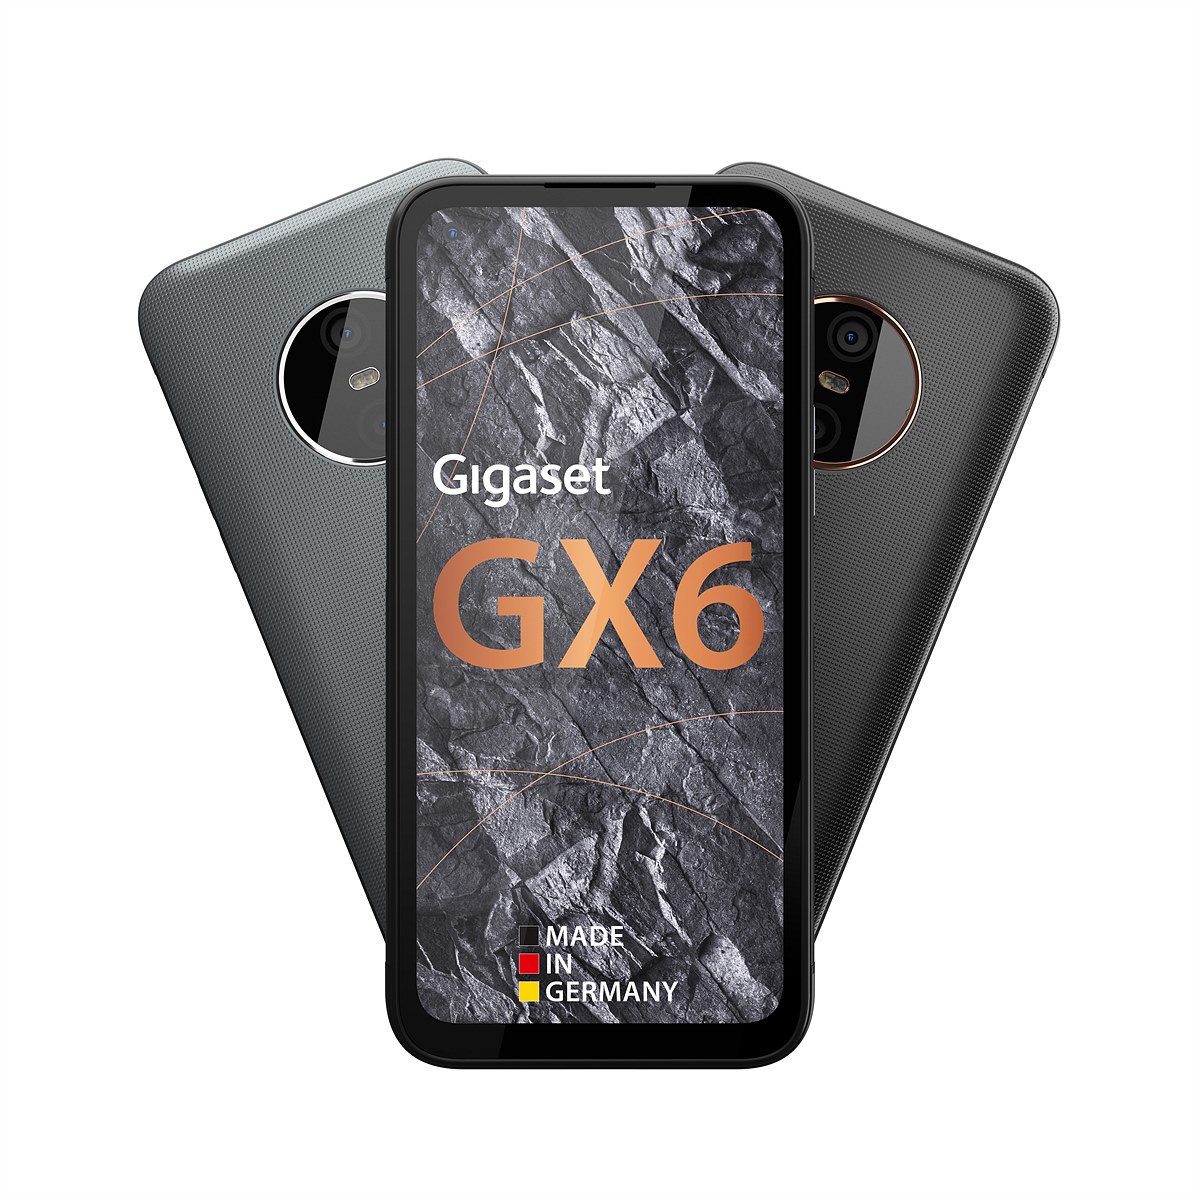 Das neue Gigaset GX6